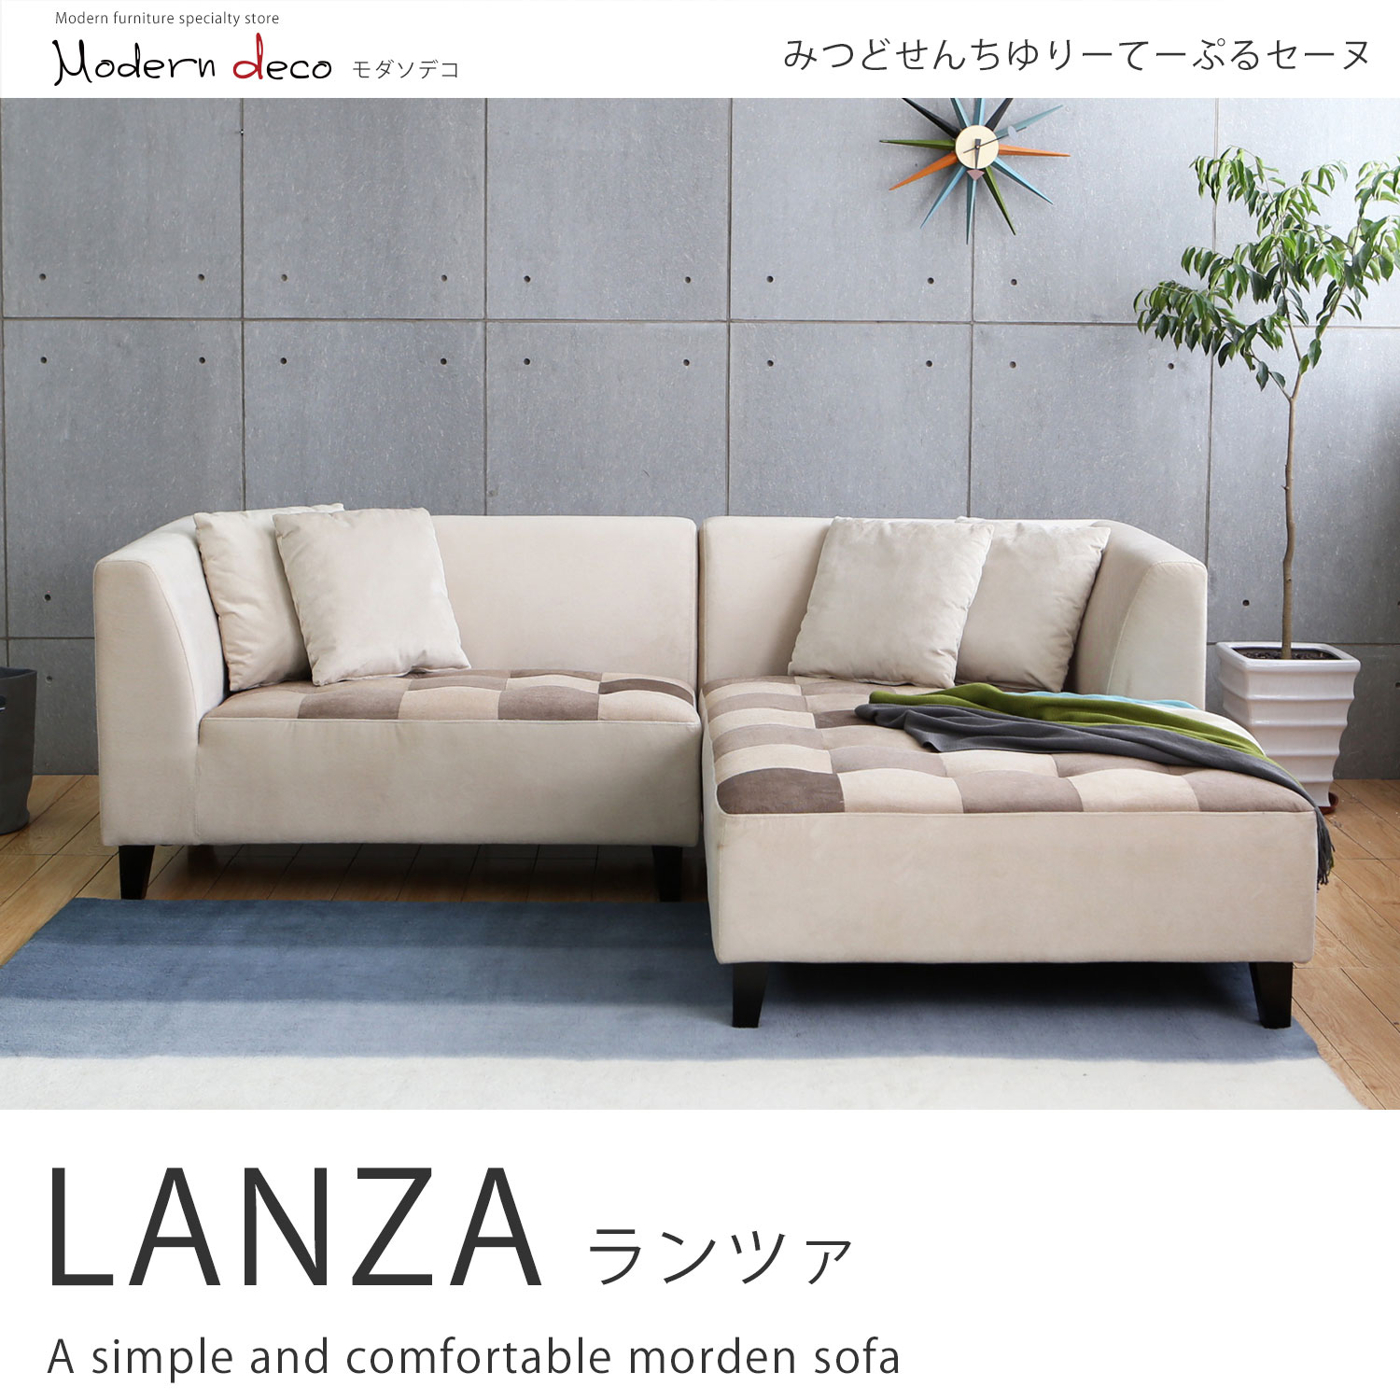 【日本品牌MODERN DECO】蘭莎舒柔拼格設計L型布沙發/H&D東稻家居